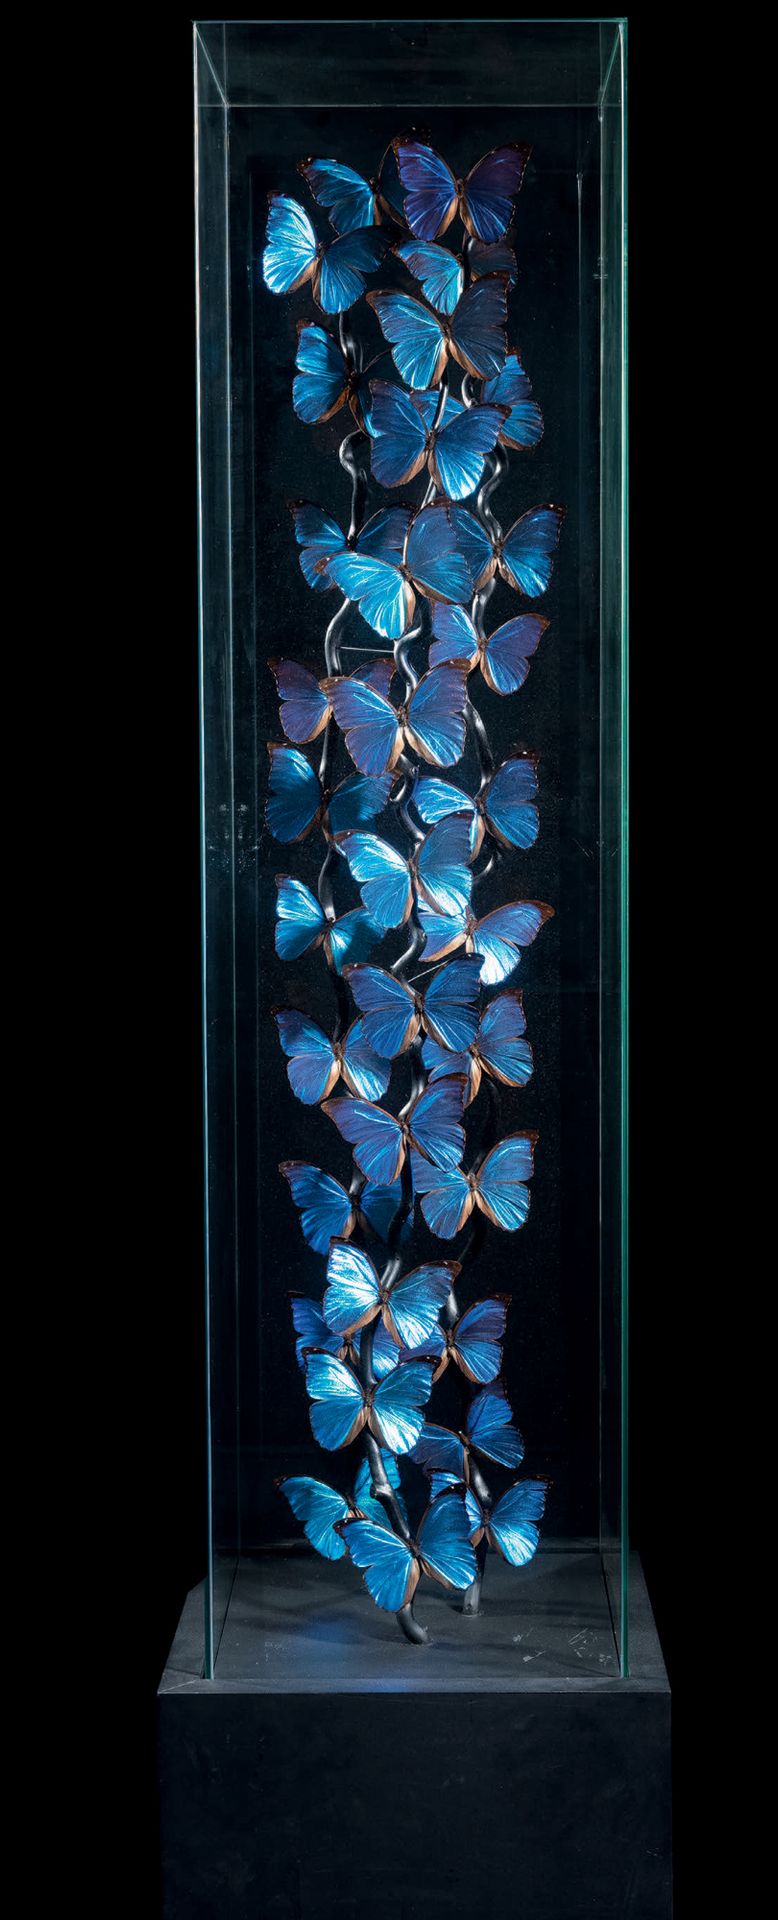 Null FLIPPERS IN A GLASS COLUMN
Morpho Menelaus
H. 200 cm - B. 30 cm